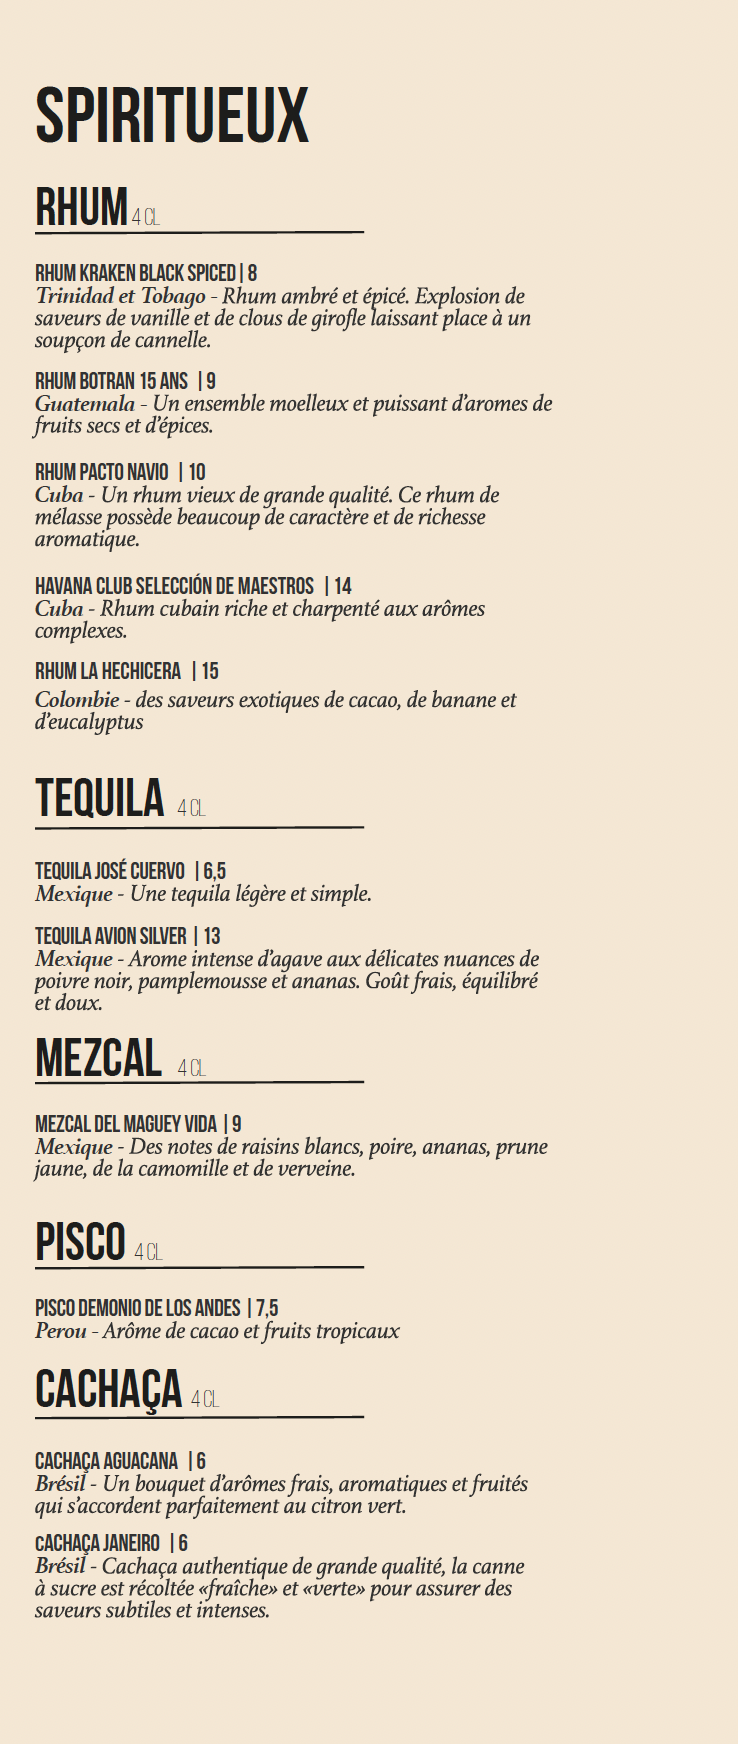 Loco loca - spiritueux - cocktails - carte - rhum - tequila - mezcal - pisco - cachaça